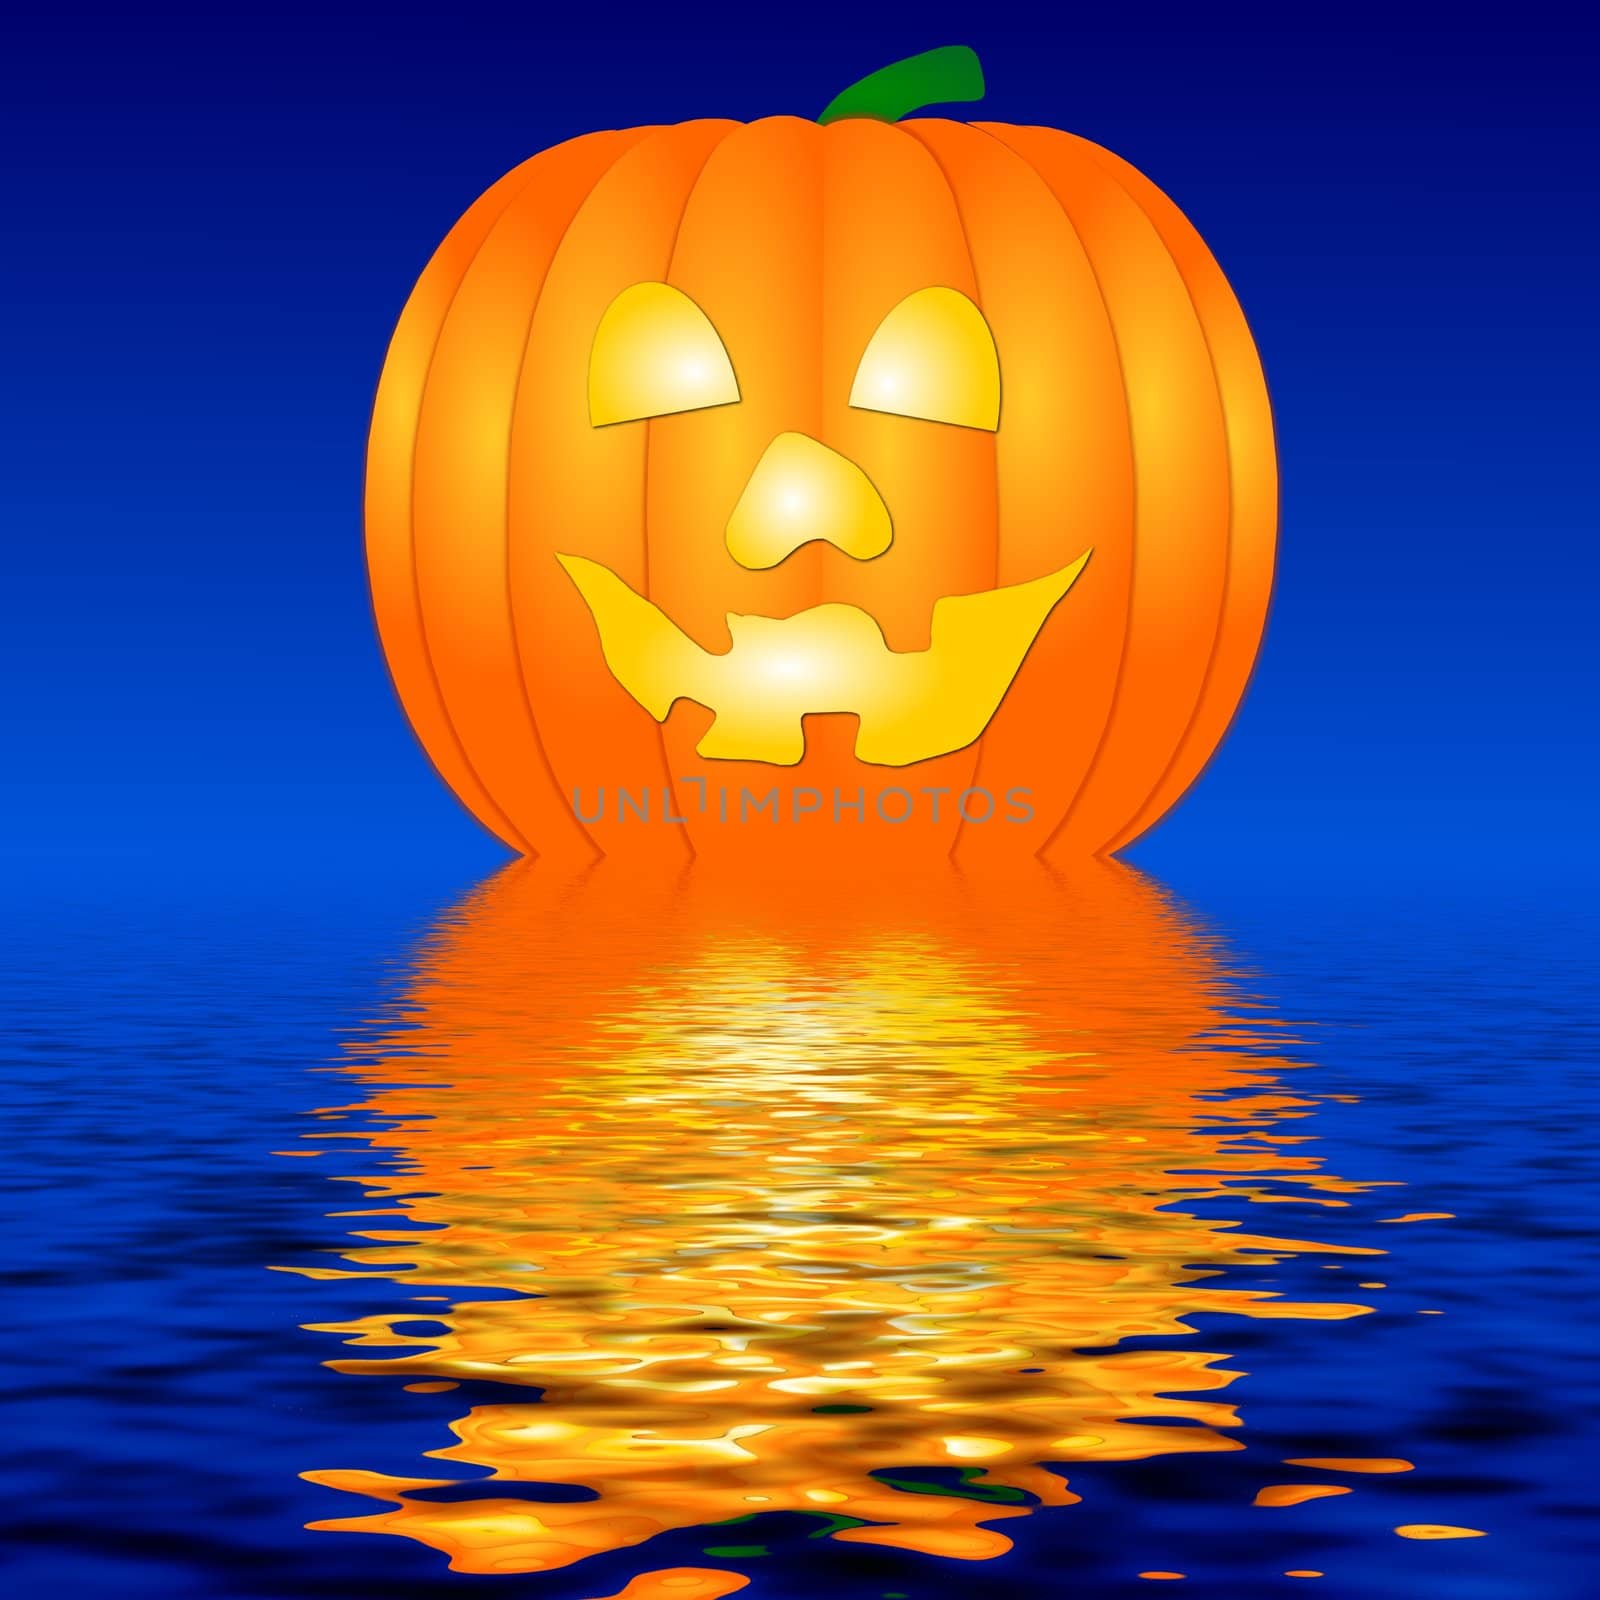  Halloween Pumpkin in water by peromarketing